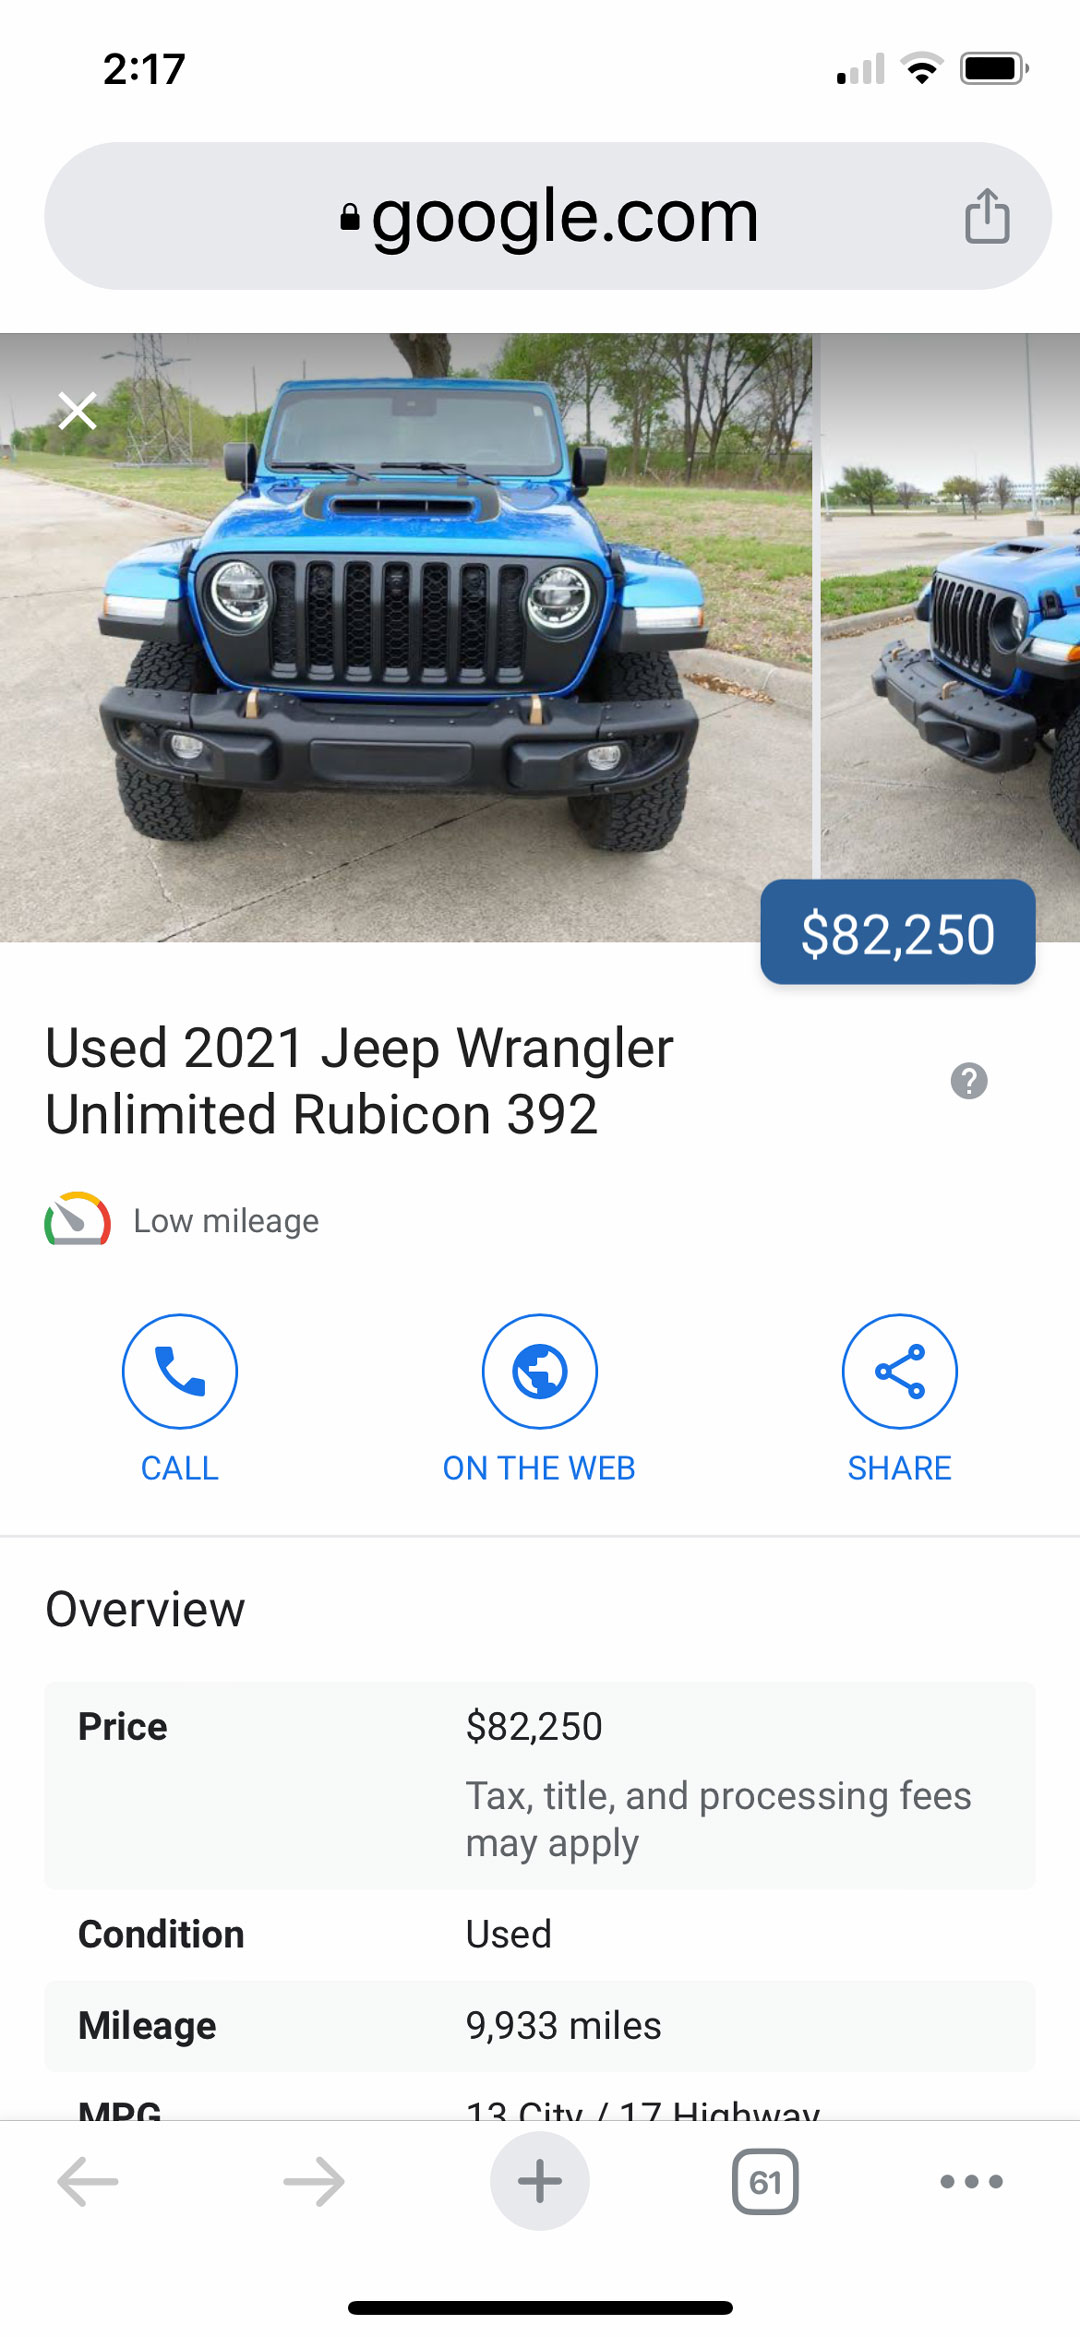 Google Cars For Sale Details